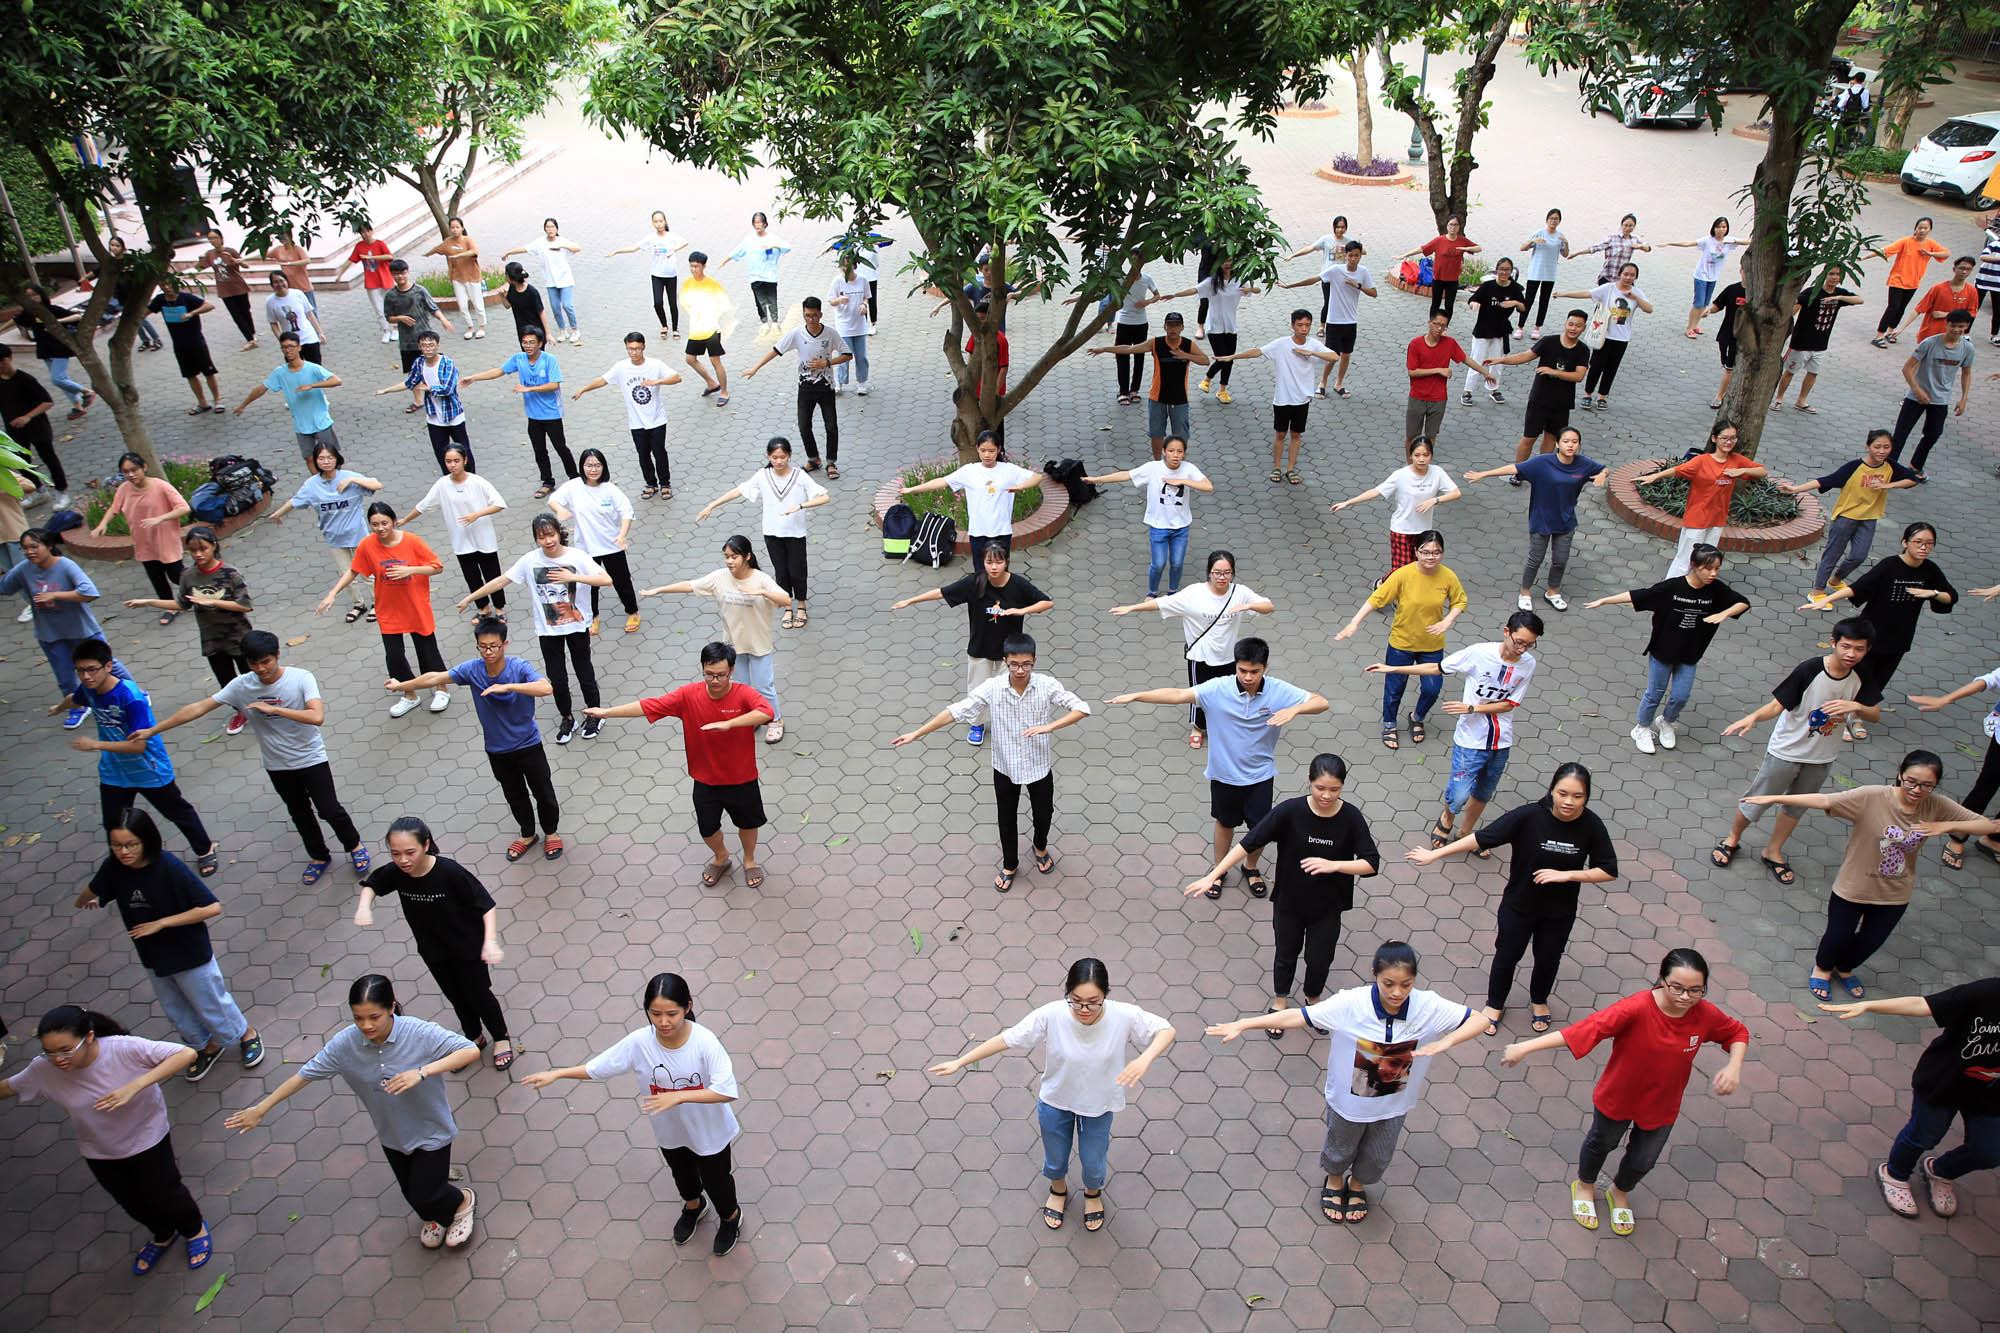 Các bạn học sinh của trường THPT Chuyên Phan Bội Châu đang nỗ lực tập luyện để cổ vũ cho buổi tường thuật trực tiếp vào ngày 15/9 sắp tới. Ảnh: Hồ Phương